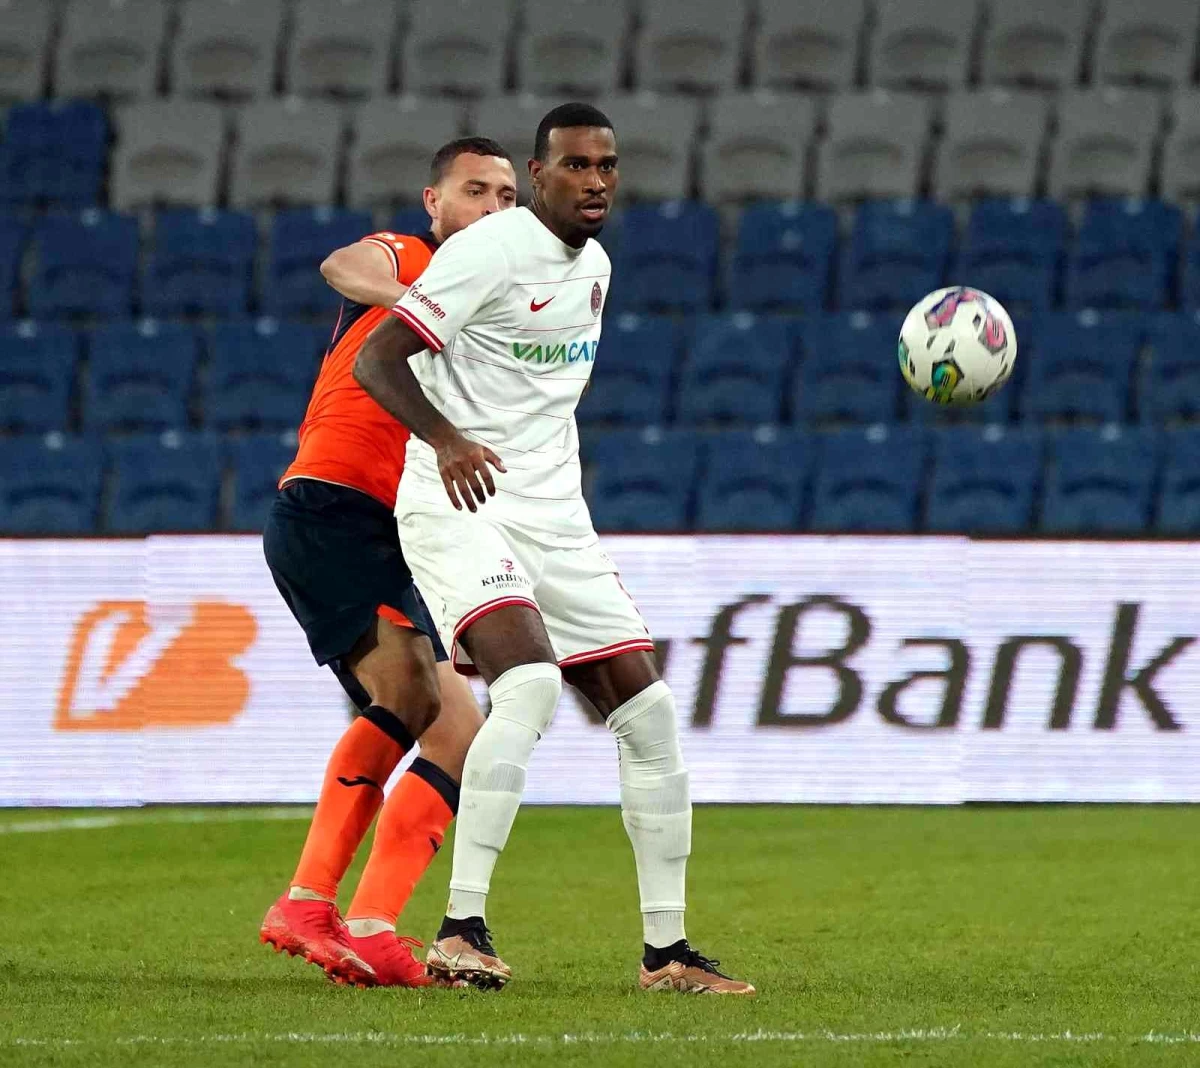 Spor Toto Süper Lig: Medipol Başakşehir: 2 Antalyaspor: 0 (Maç sonucu)